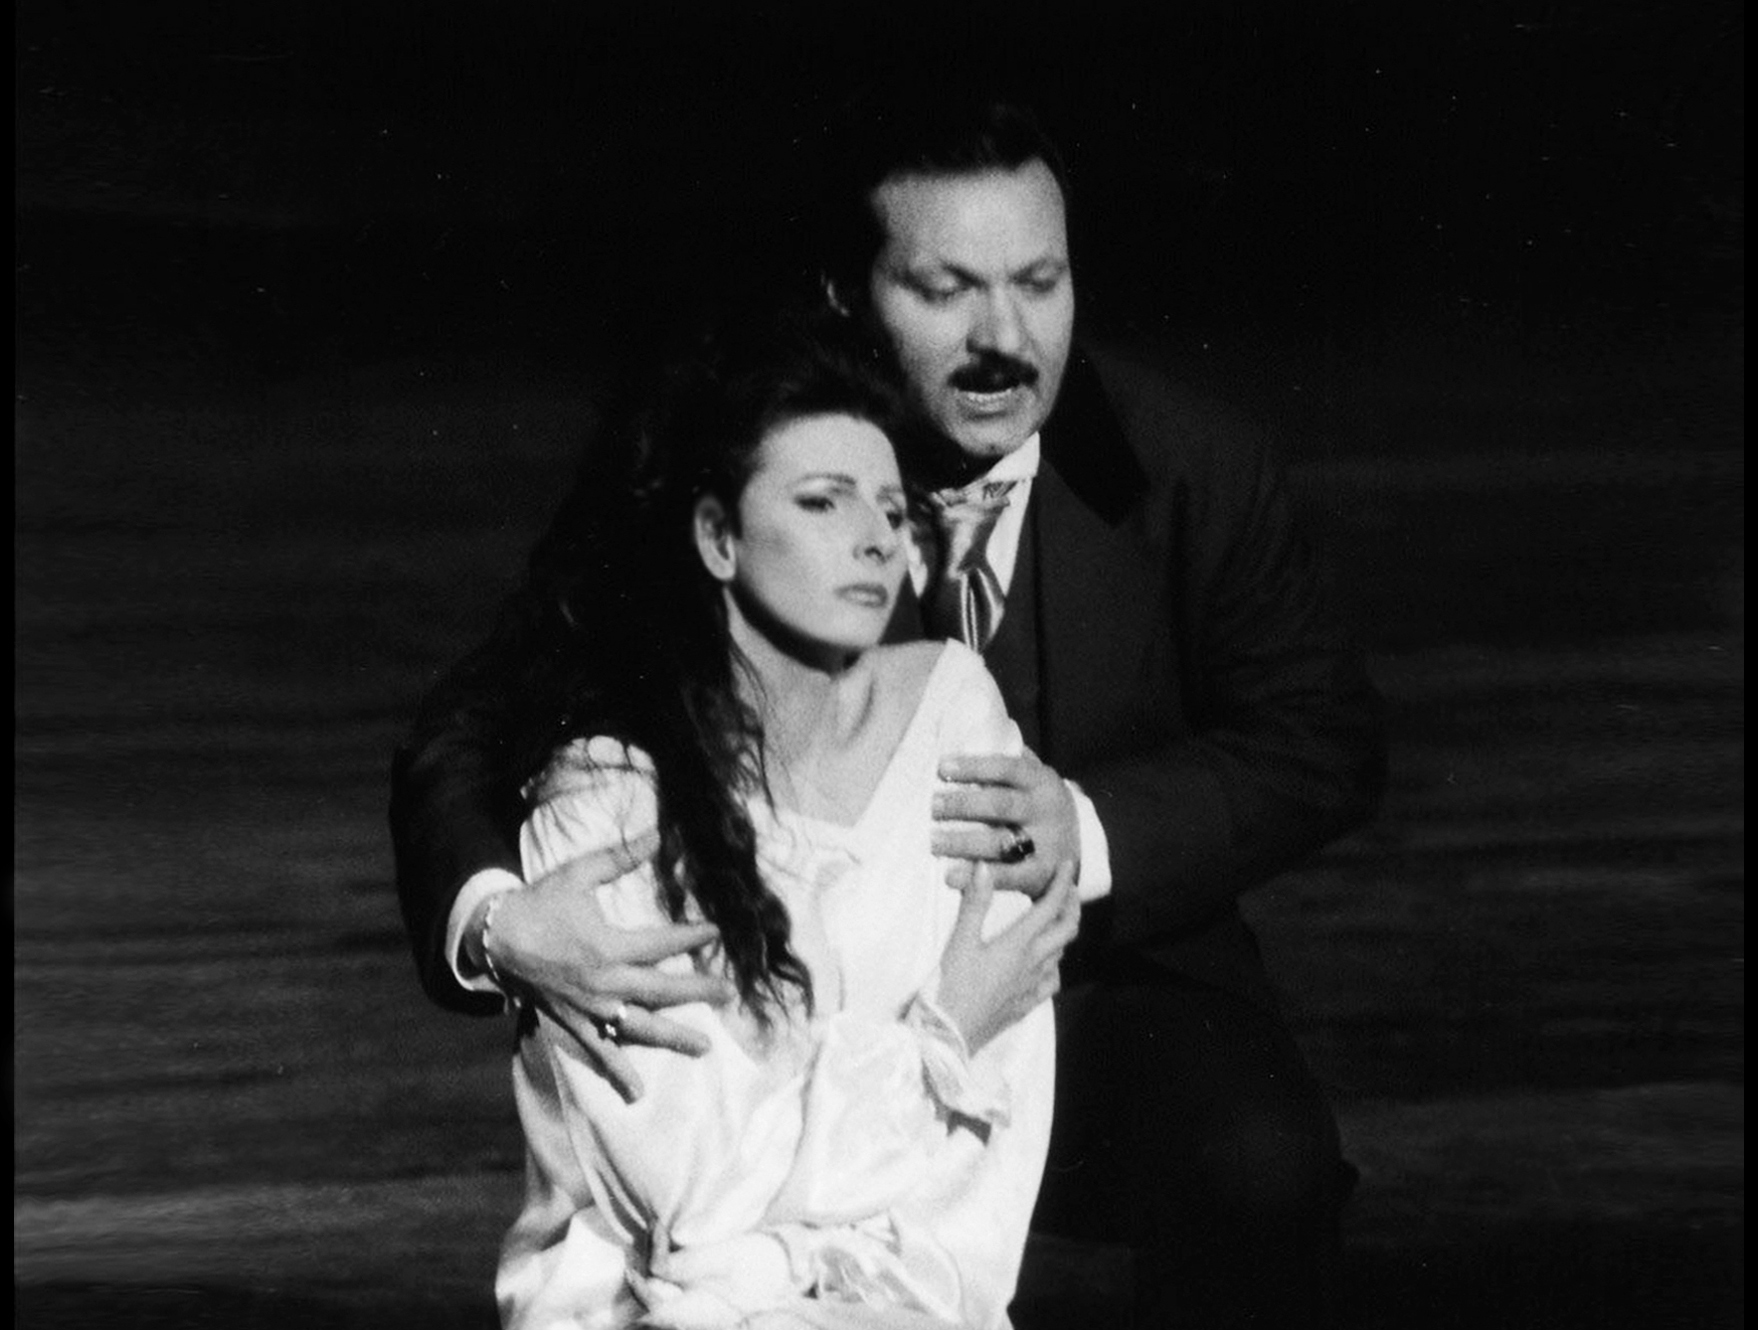 Lucia Aliberti with the tenor Salvatore Fisichella⚘Tokyo Bunka Kaikan⚘Tokyo⚘Opera⚘"La Traviata"⚘On Stage⚘Photo taken from the Video⚘http://www.luciaaliberti.it #luciaaliberti #salvatorefisichella #tokyobunkakaikan #tokyo #latraviata #opera #onstage #tvportrait #video